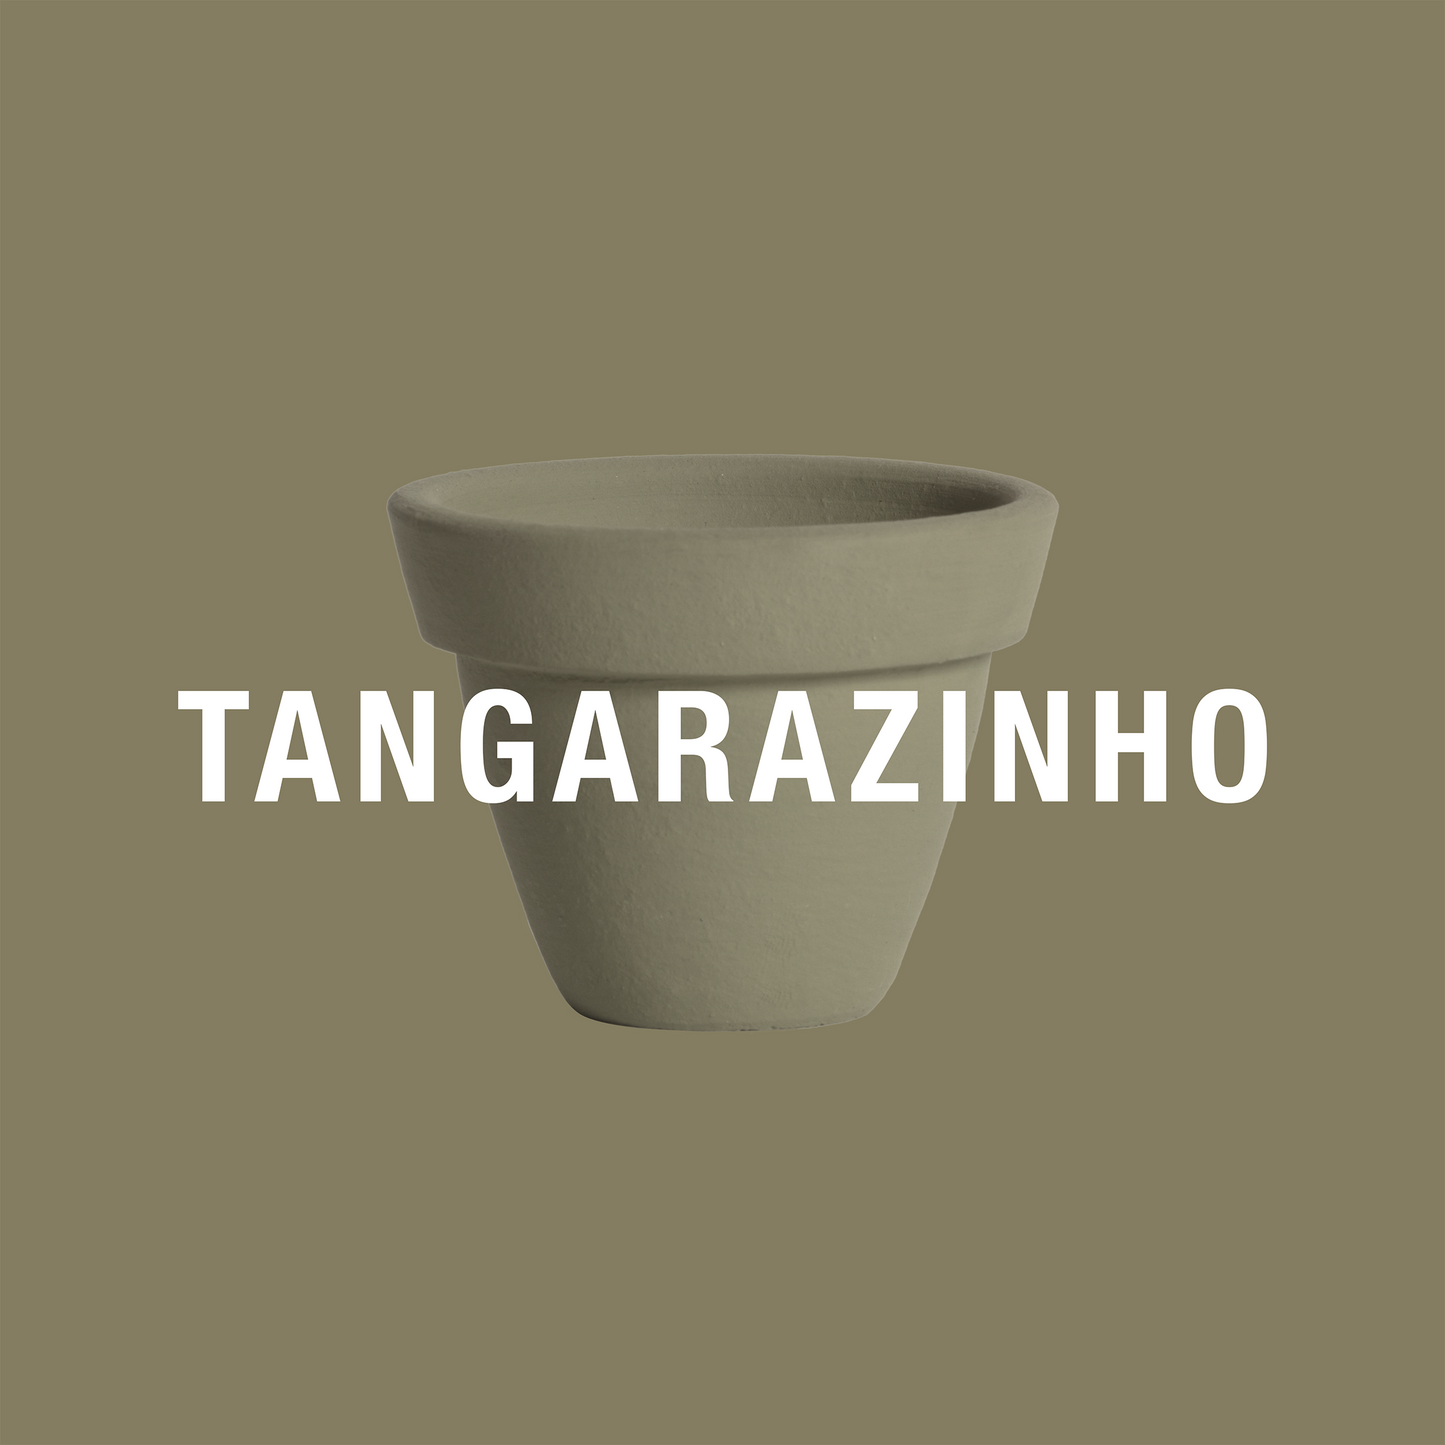 Tangarazinho